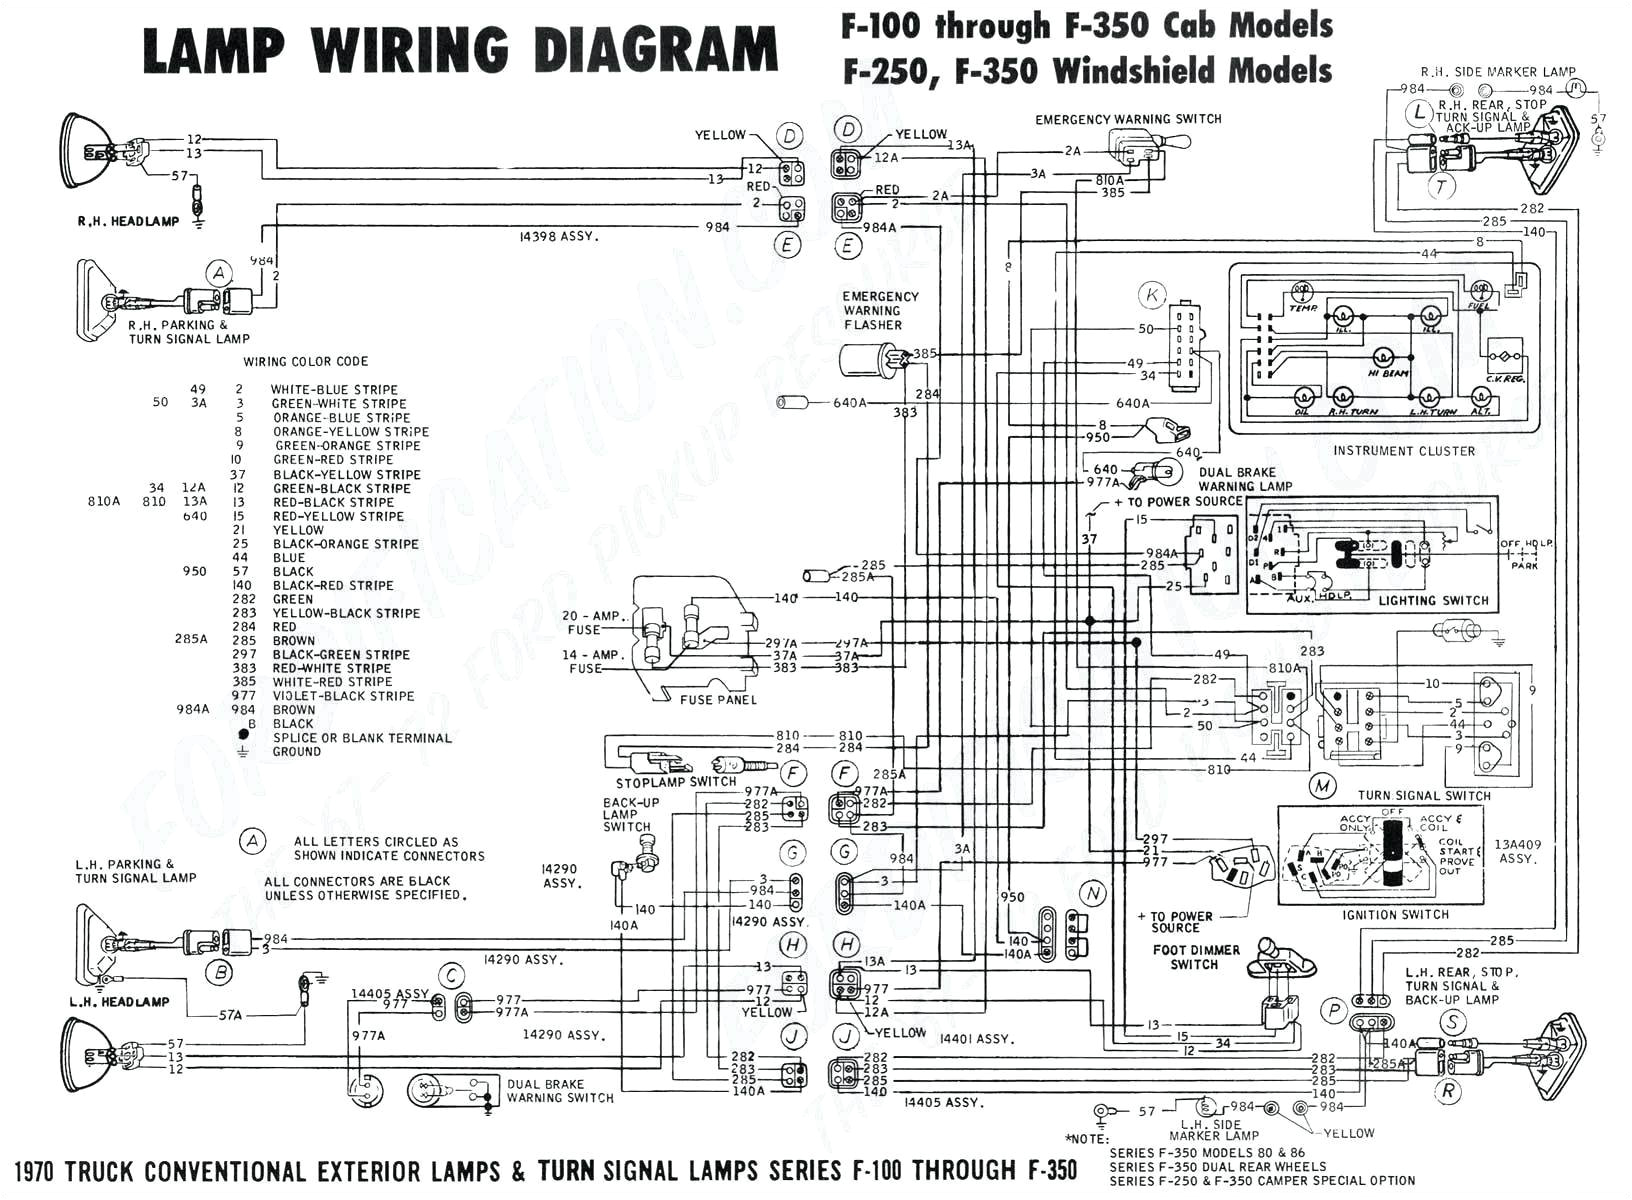 one wire alternator wiring diagram chevy wire diagram 5 wire alternator diagram